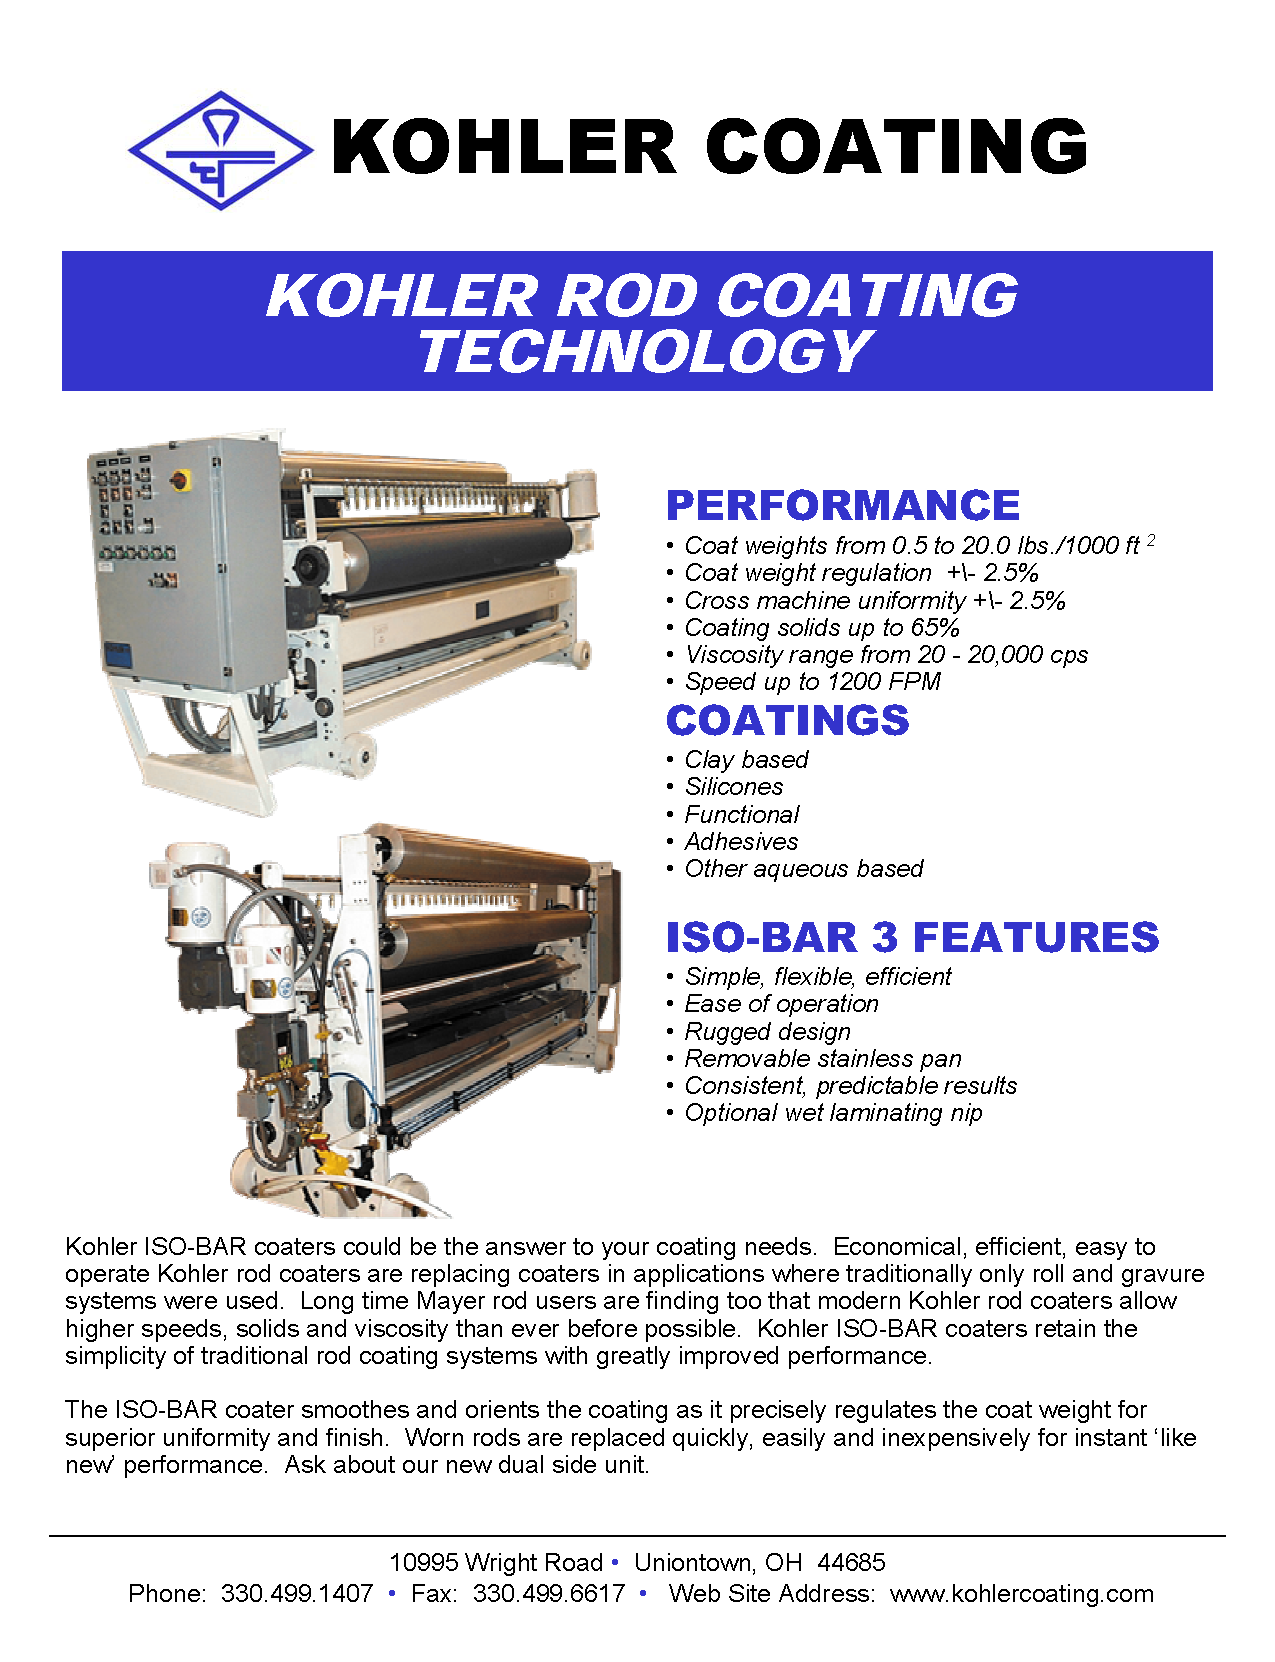 Conozca más leyendo el folleto Kohler Coating Rod Coating Technology.